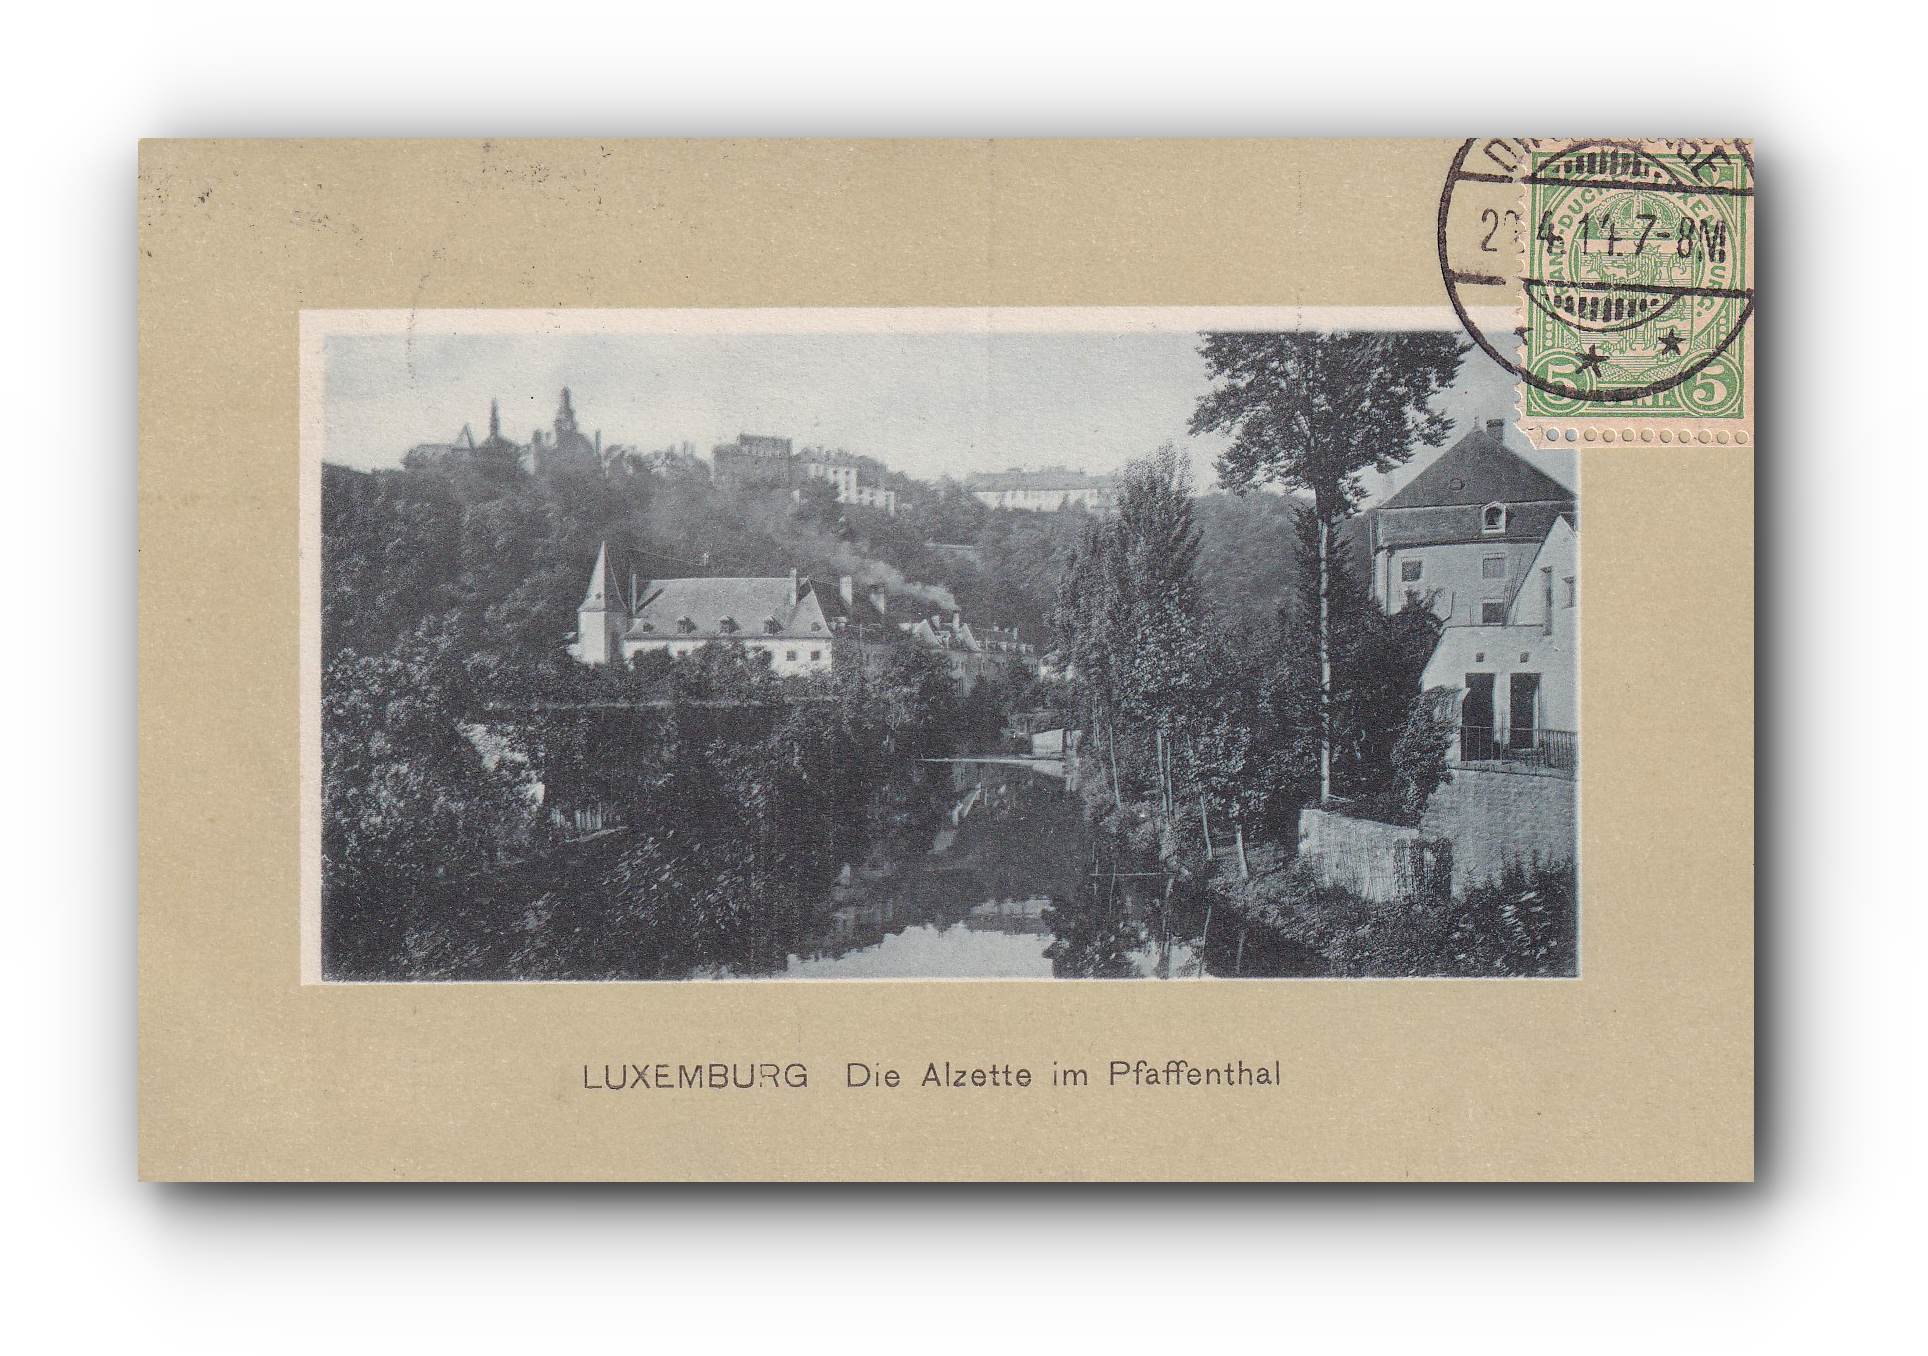 - Luxemburg - Die Alzette im Pfaffenthal - 21.04.1914 -